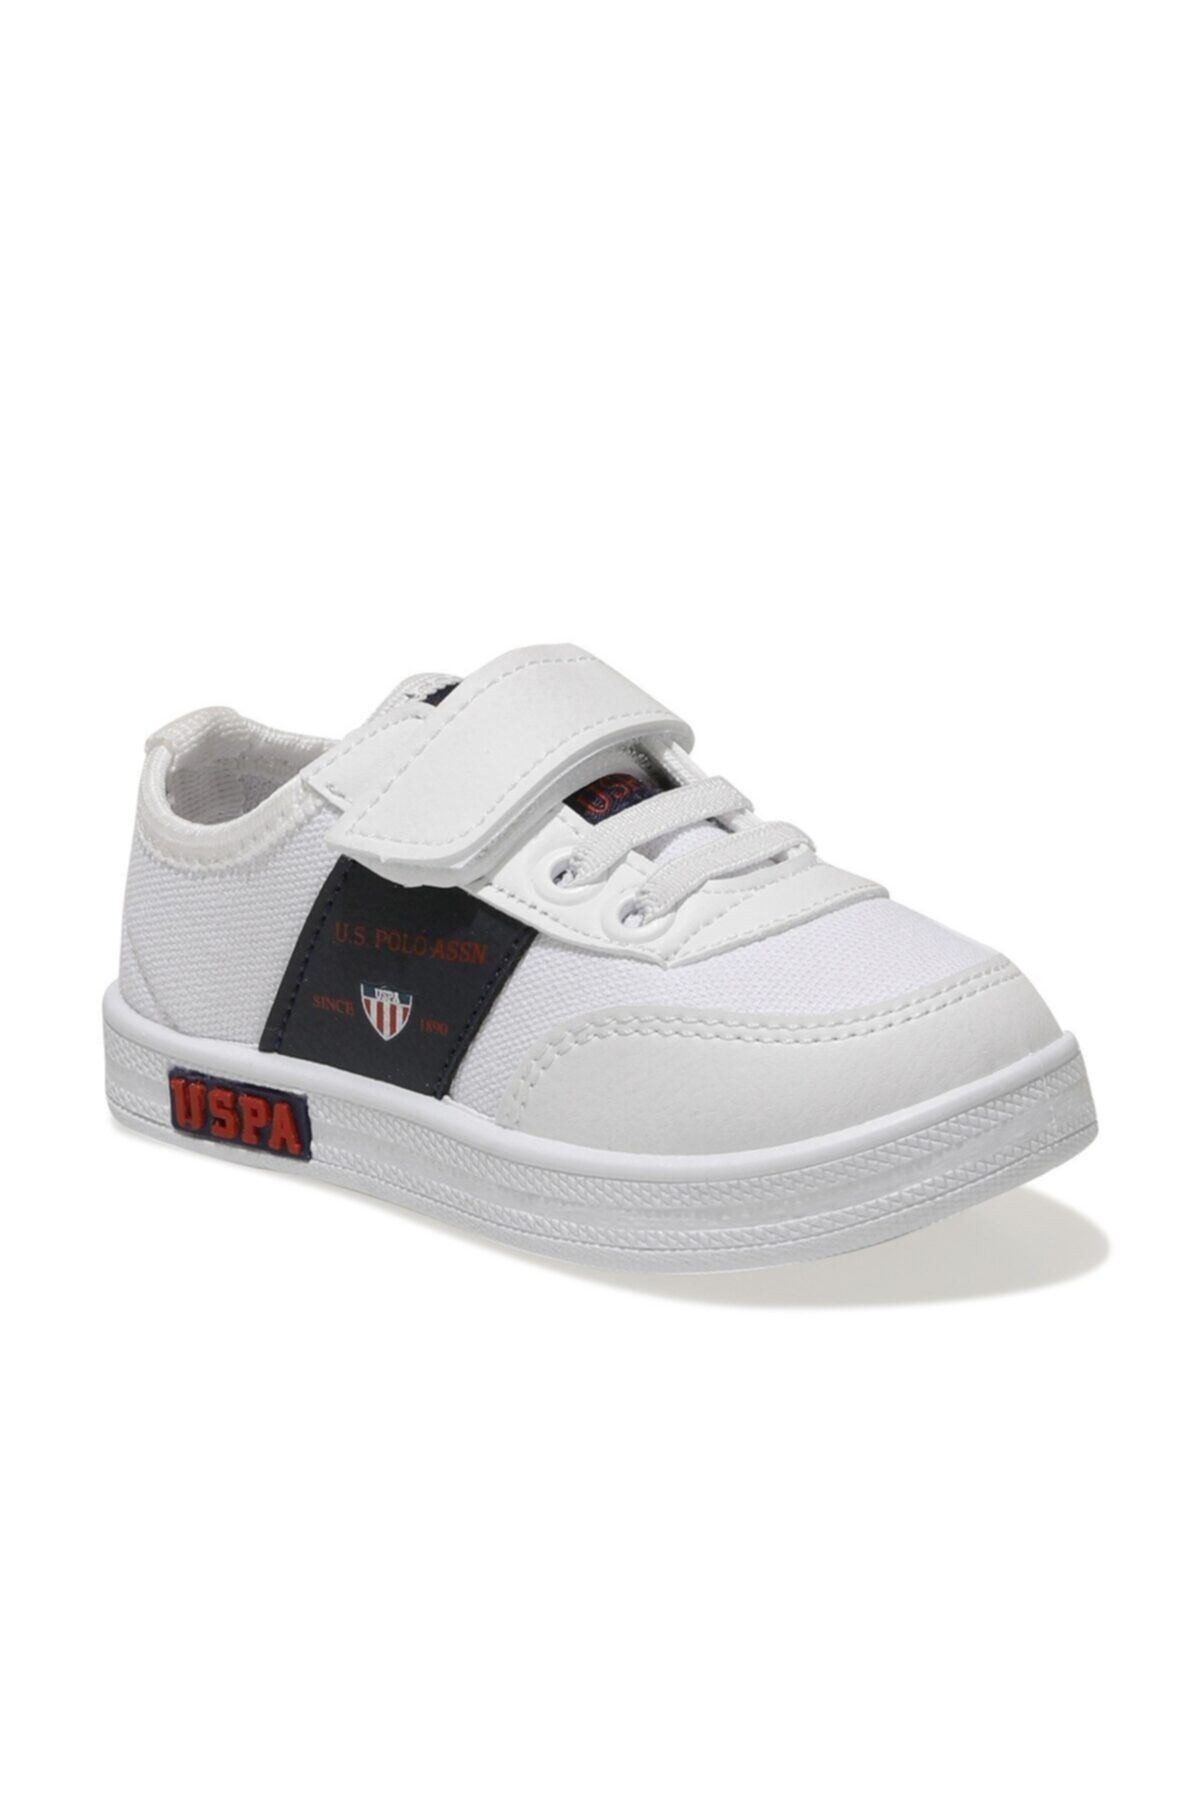 U.S. Polo Assn. Beyaz - Erkek Çocuk Sneaker Ayakkabı